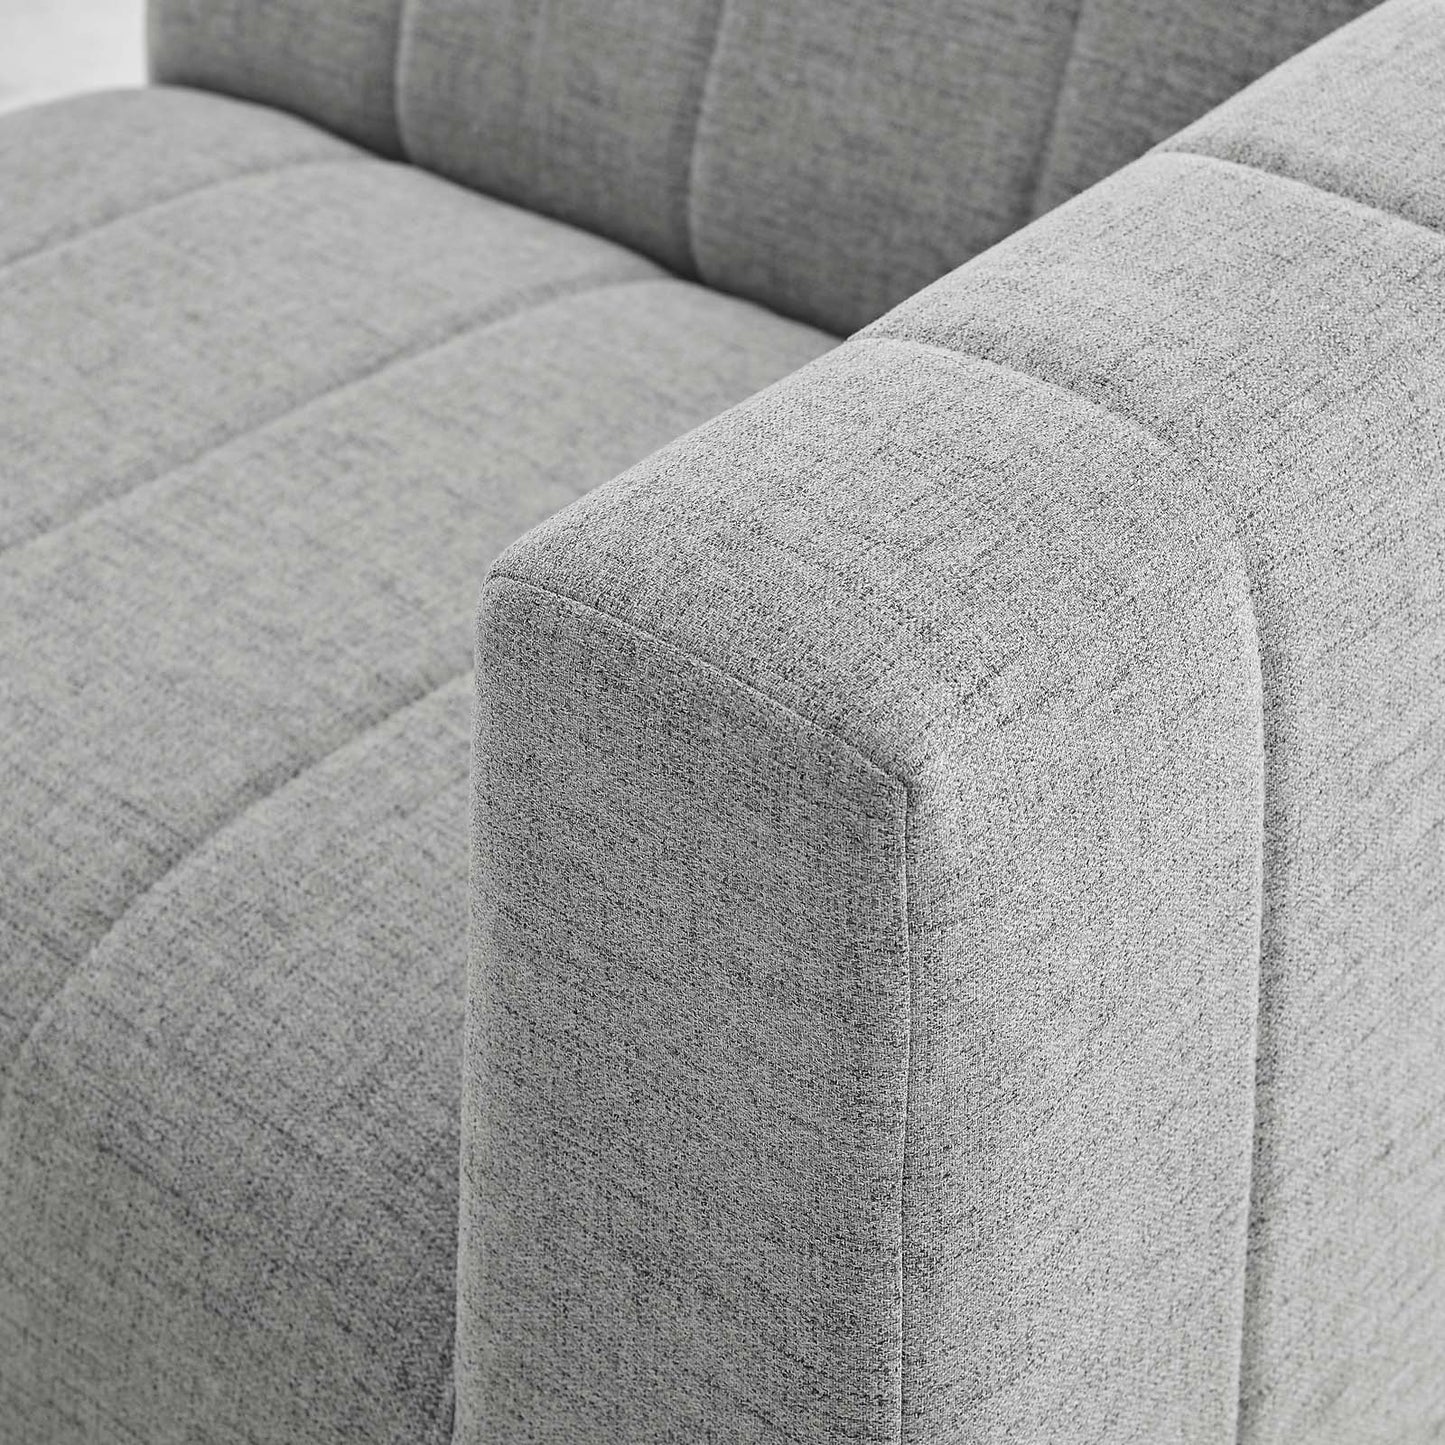 Bartlett Upholstered Fabric 6-Piece Sectional Sofa Light Gray EEI-4533-LGR